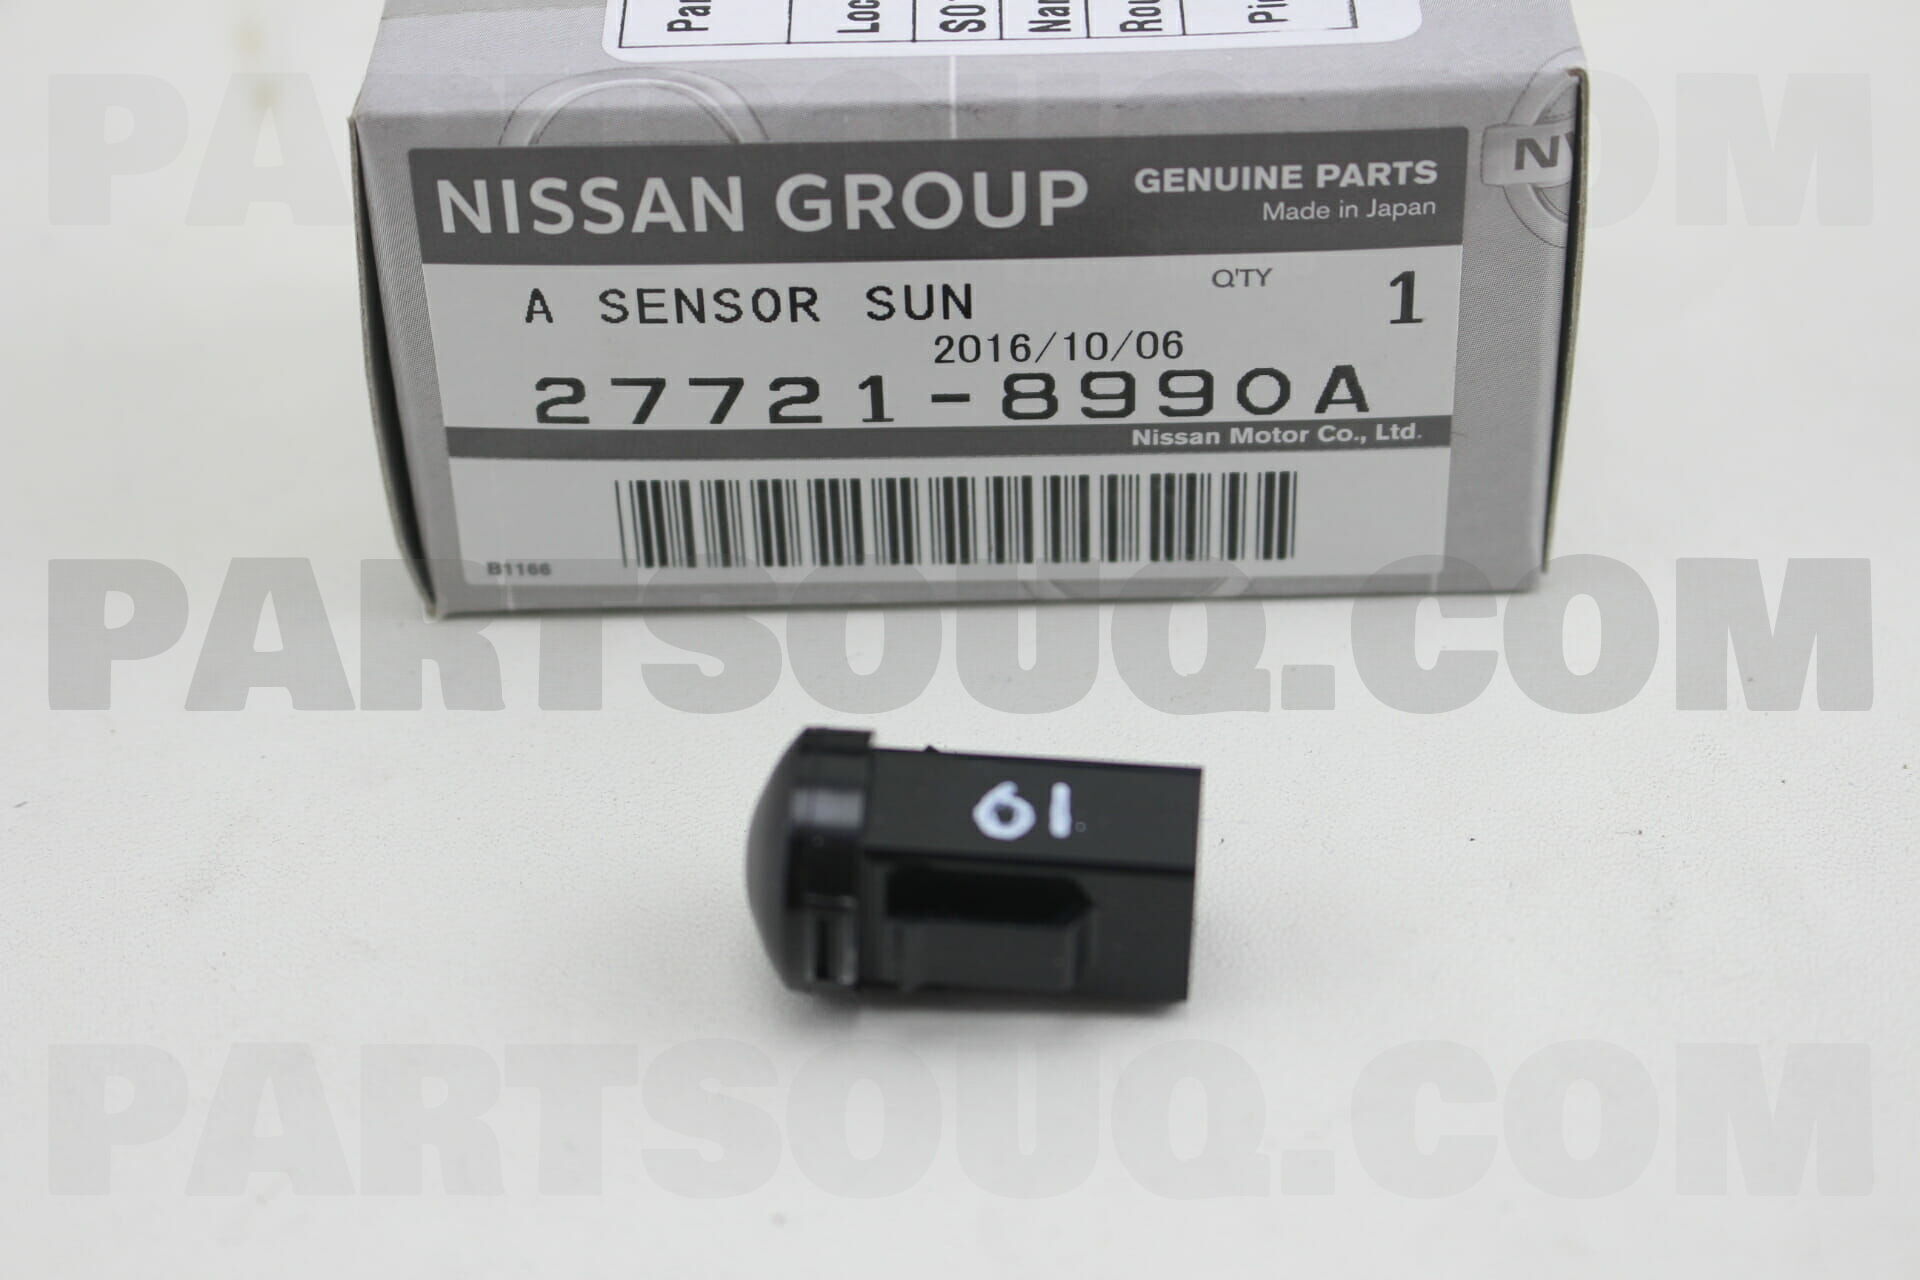 Ниссан датчики оригинал. Humidity sensor ASSY. G sensor Nissan. Ps69-01 Hitachi датчик Ниссан аналоги. 62022hz51h Nissan деталь.